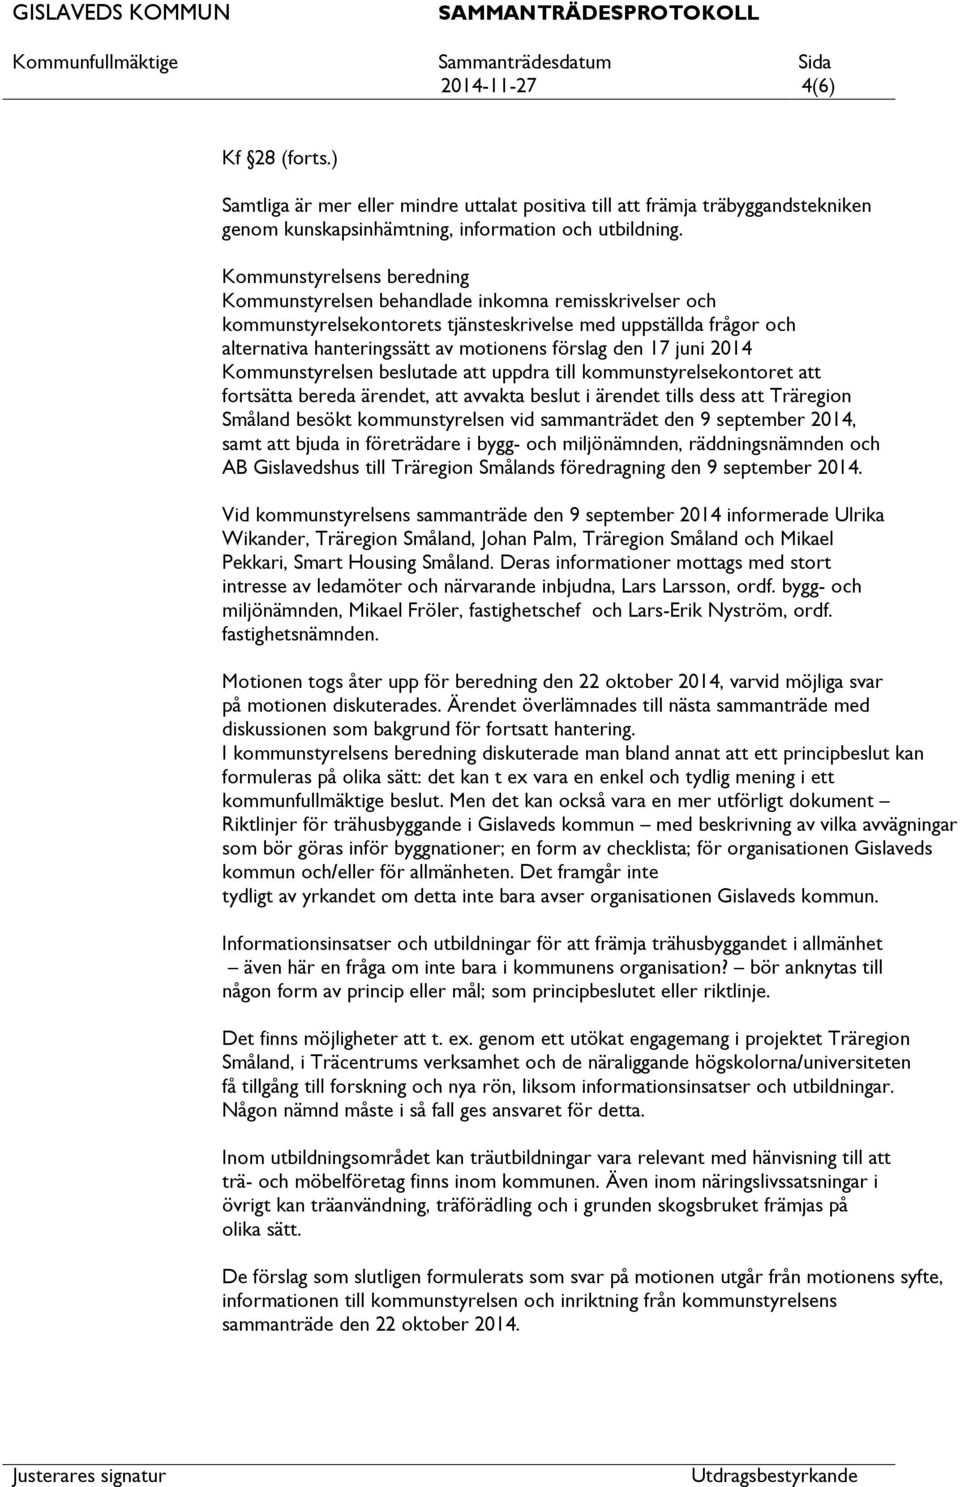 den 17 juni 2014 Kommunstyrelsen beslutade uppdra till kommunstyrelsekontoret fortsätta bereda ärendet, avvakta beslut i ärendet tills dess Träregion Småland besökt kommunstyrelsen vid sammanträdet